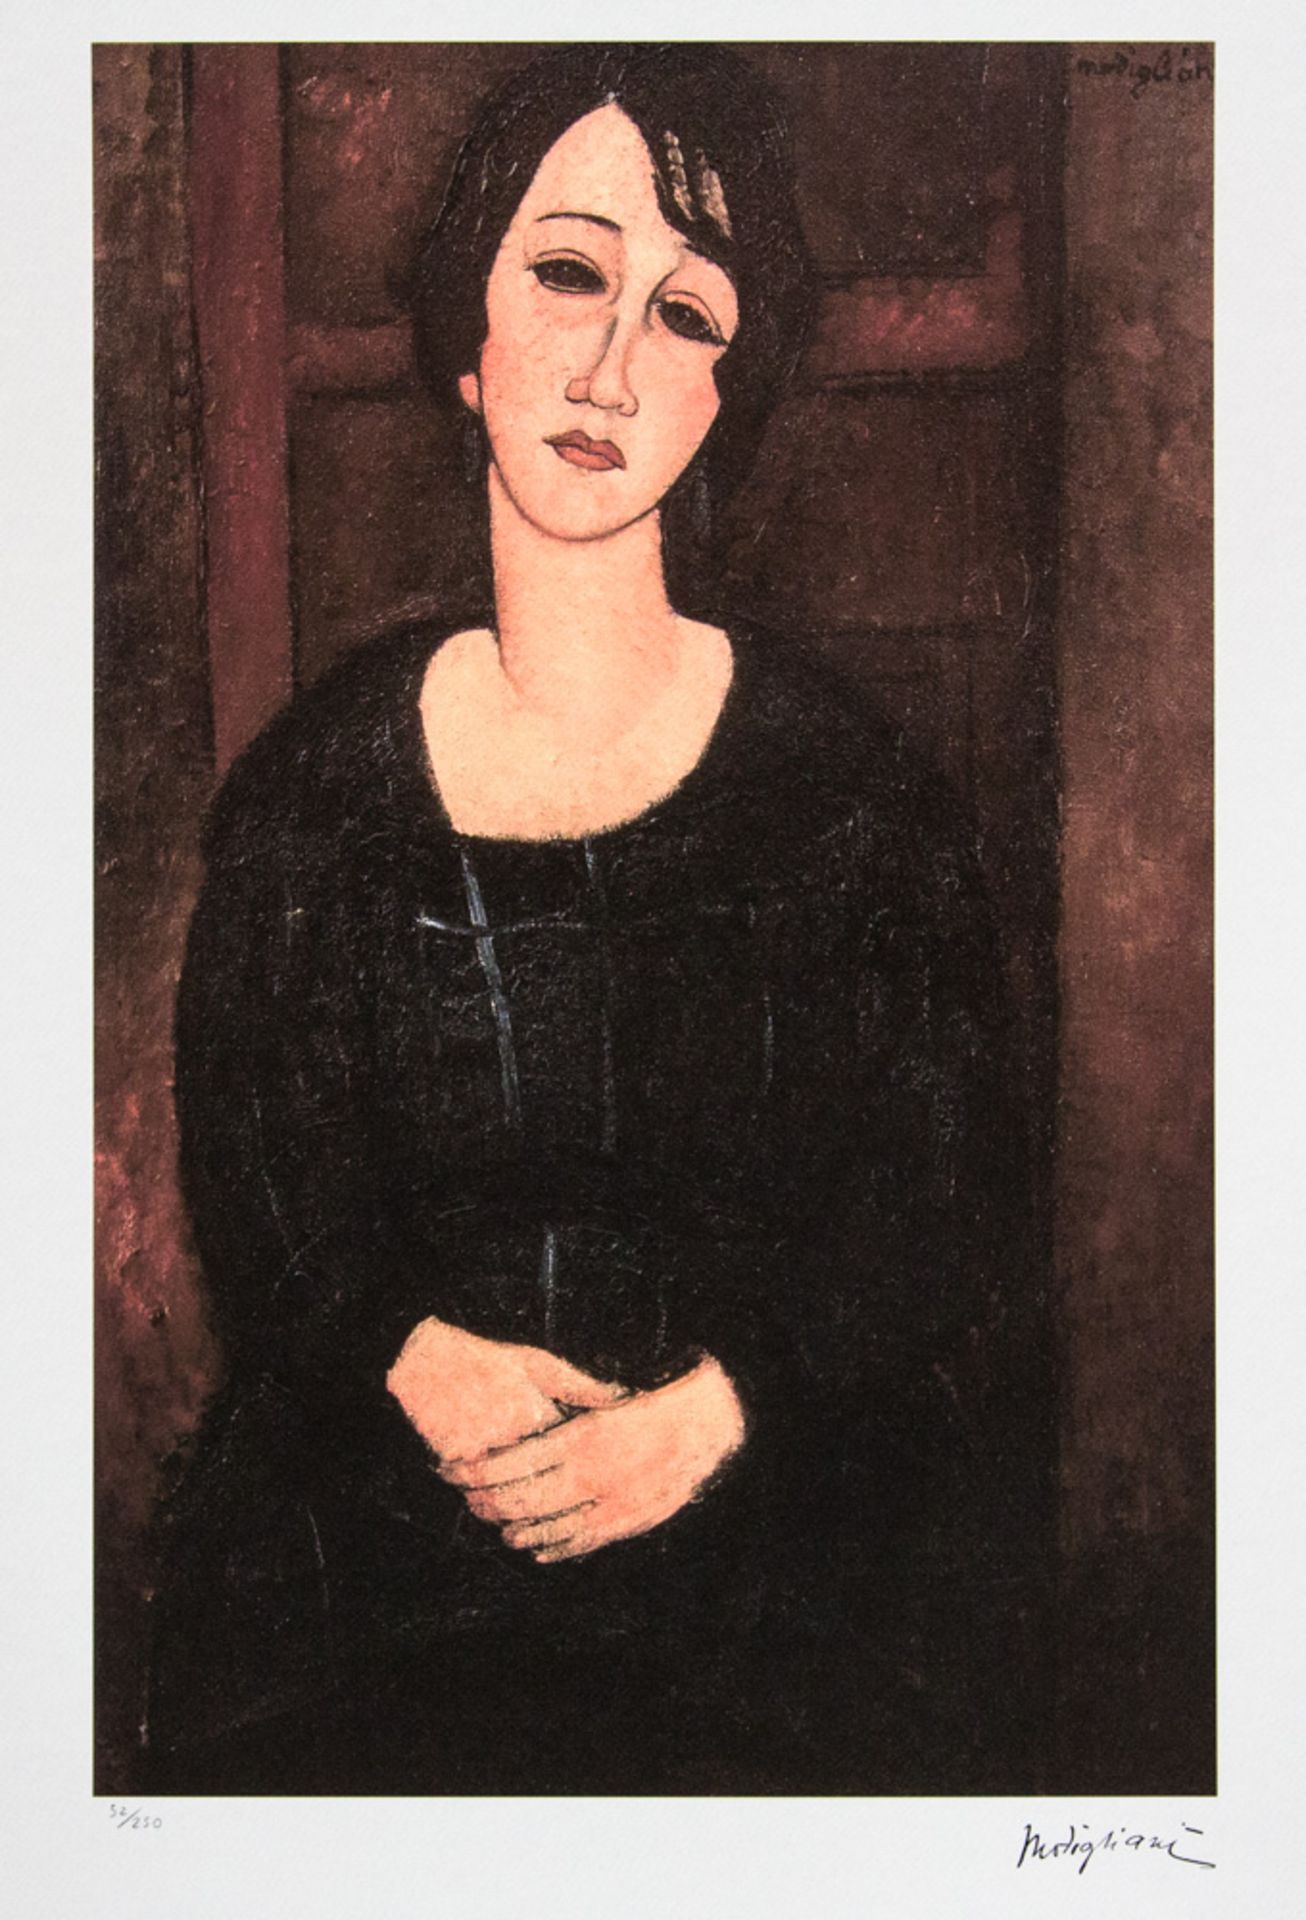 Amadeo Modigliani 'Woman with Scottish Dress'